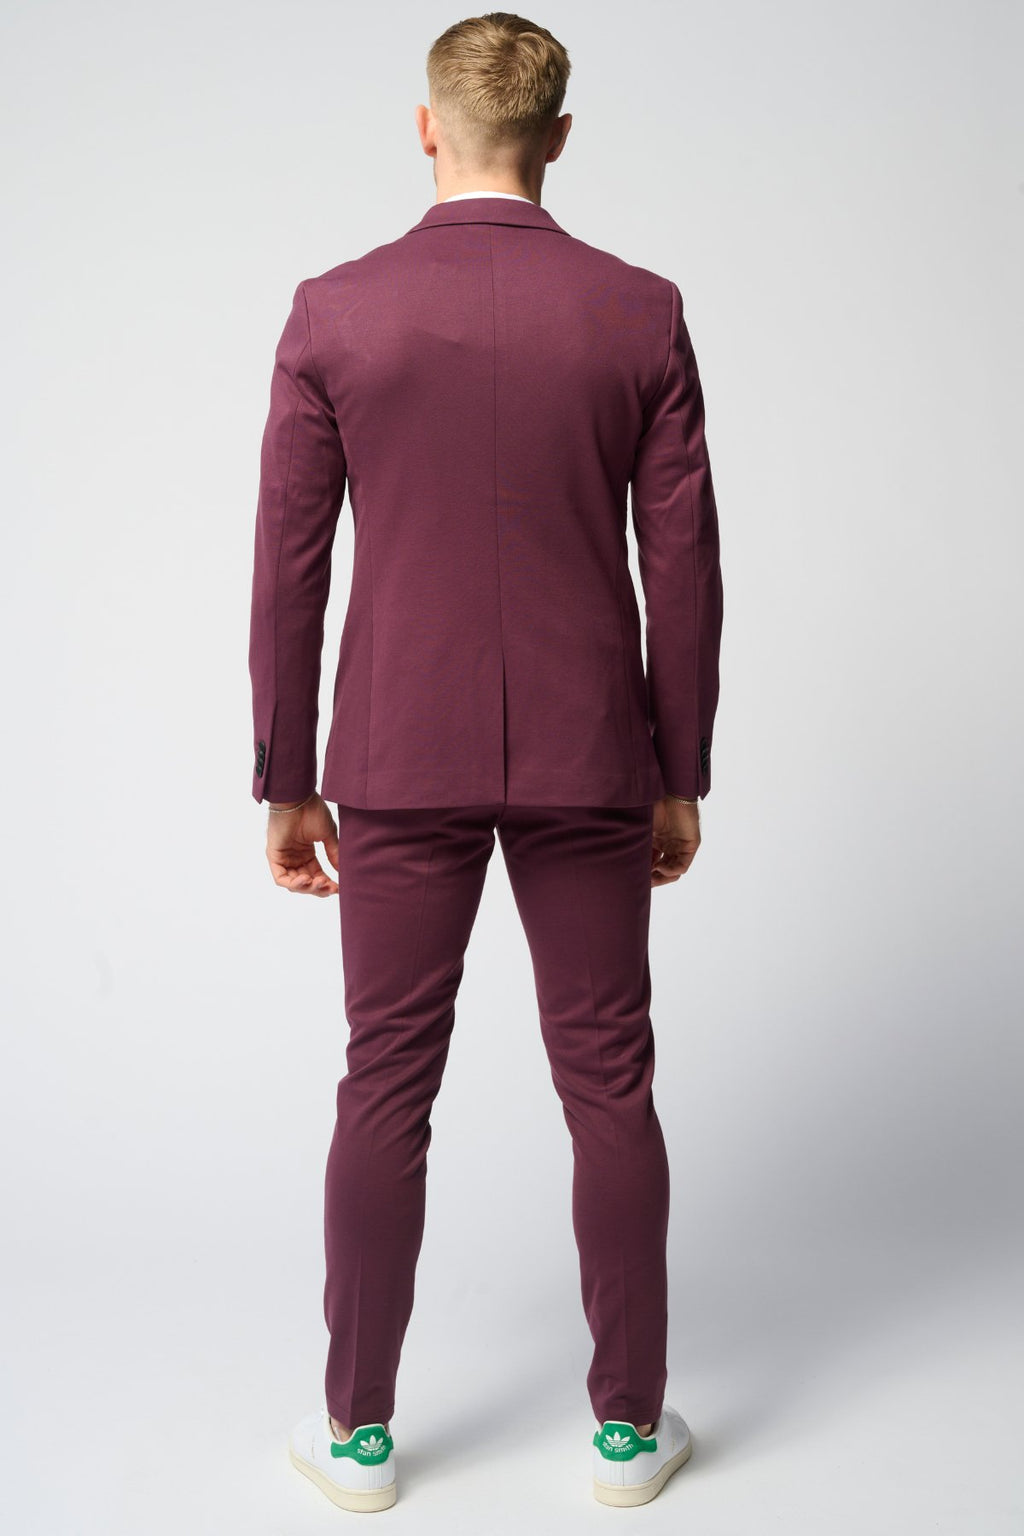 Performance Kostiumas ™ ️ (Burgundy) + Performance Marškiniai - paketo sandoris